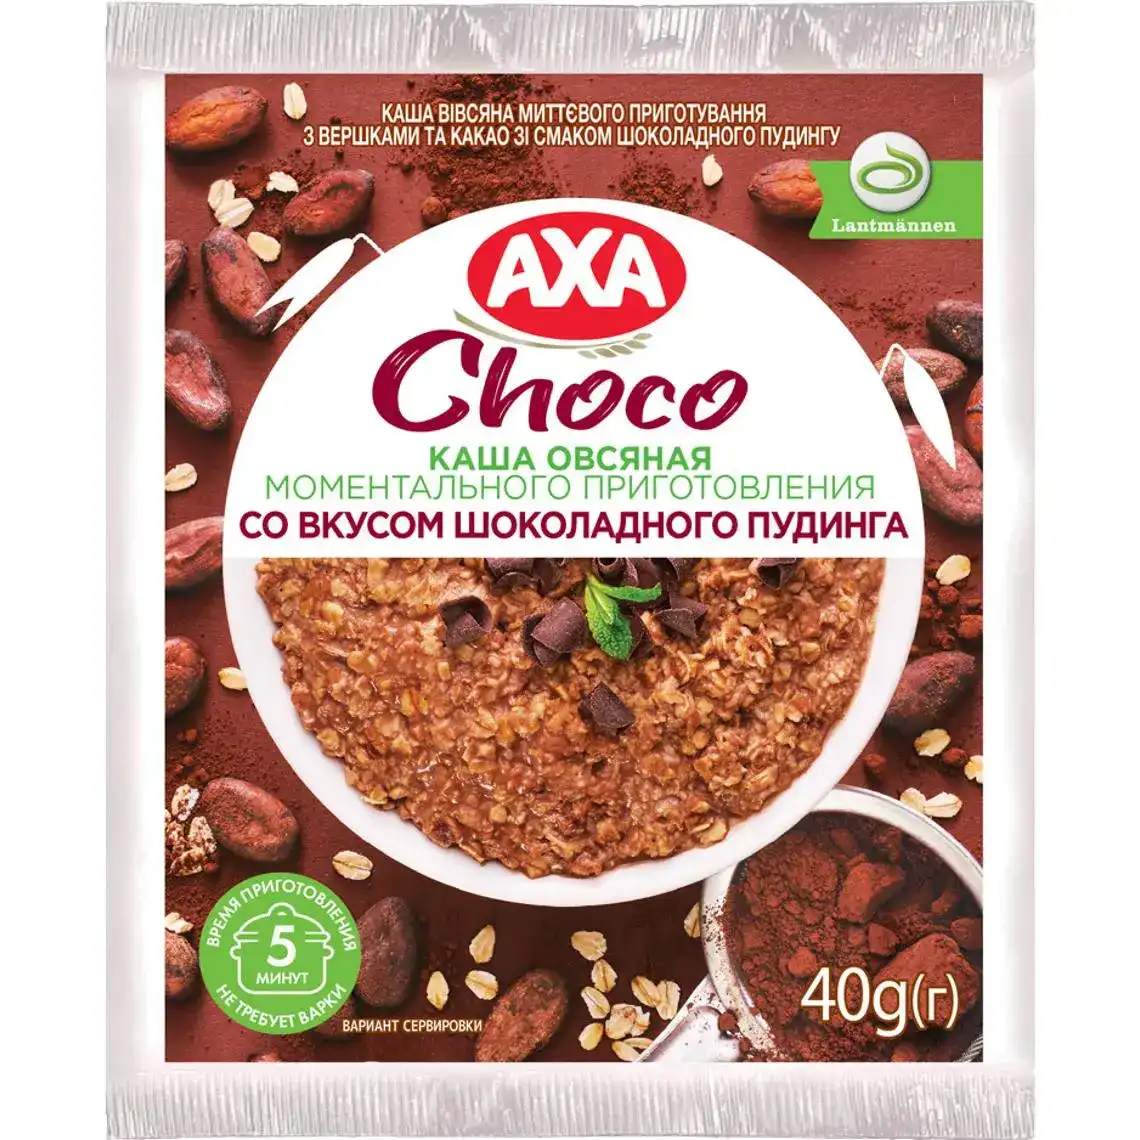 Каша вівсяна миттєвого приготування Axa Premium зі смаком шоколадного пудингу 40 г